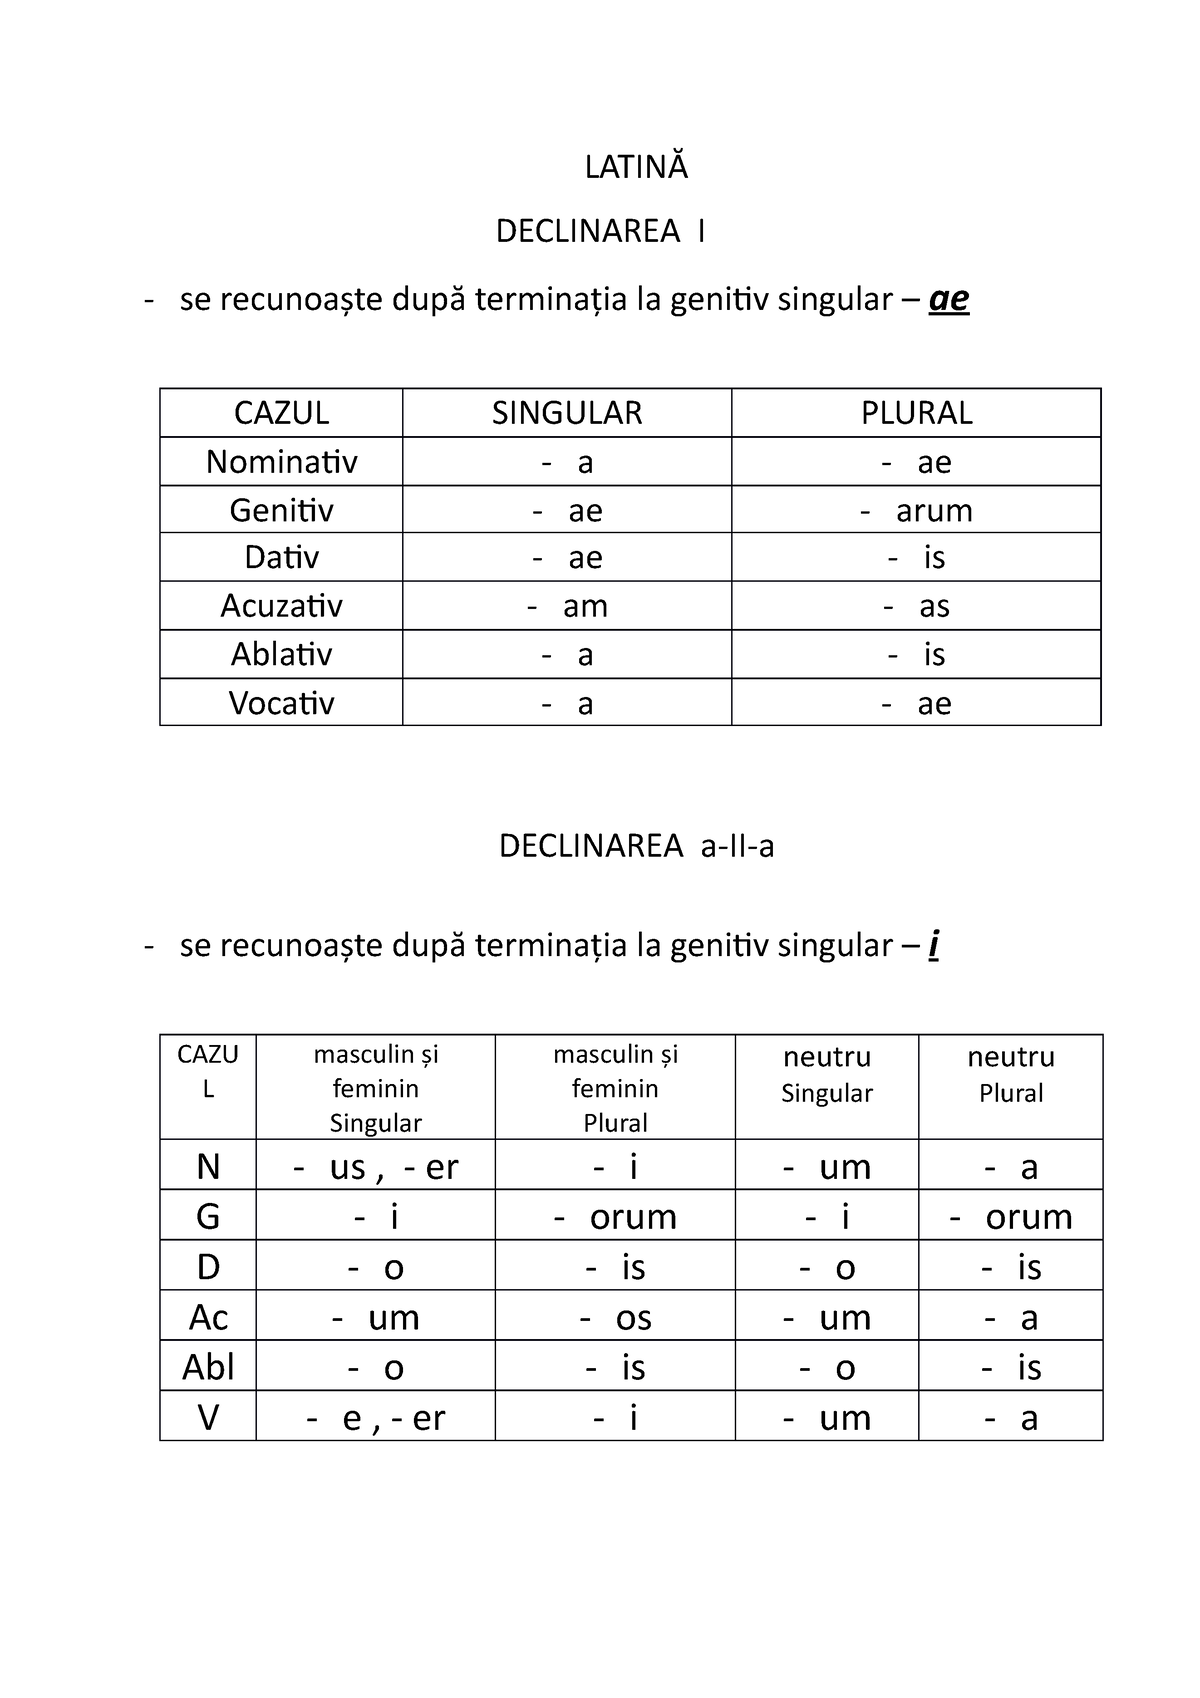 LatinĂ-tabel declinare - Linux - Studocu